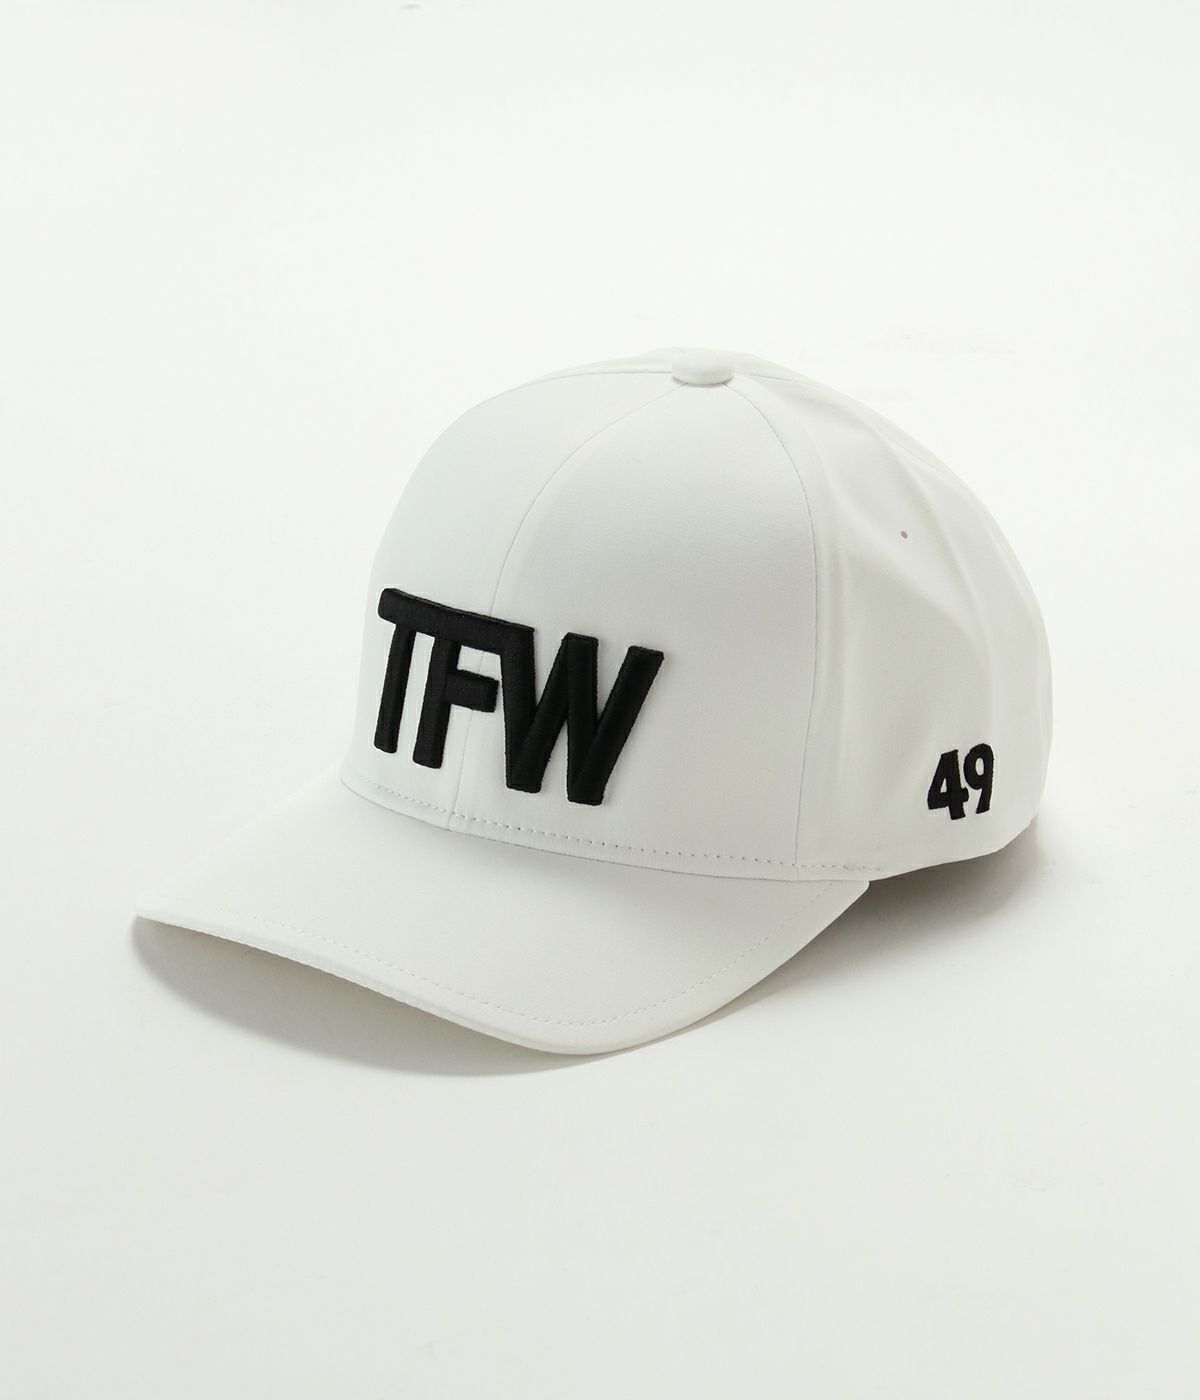 TFW49 - TECHNICAL CAP | キャップ | ネイビー | ユニセックス 